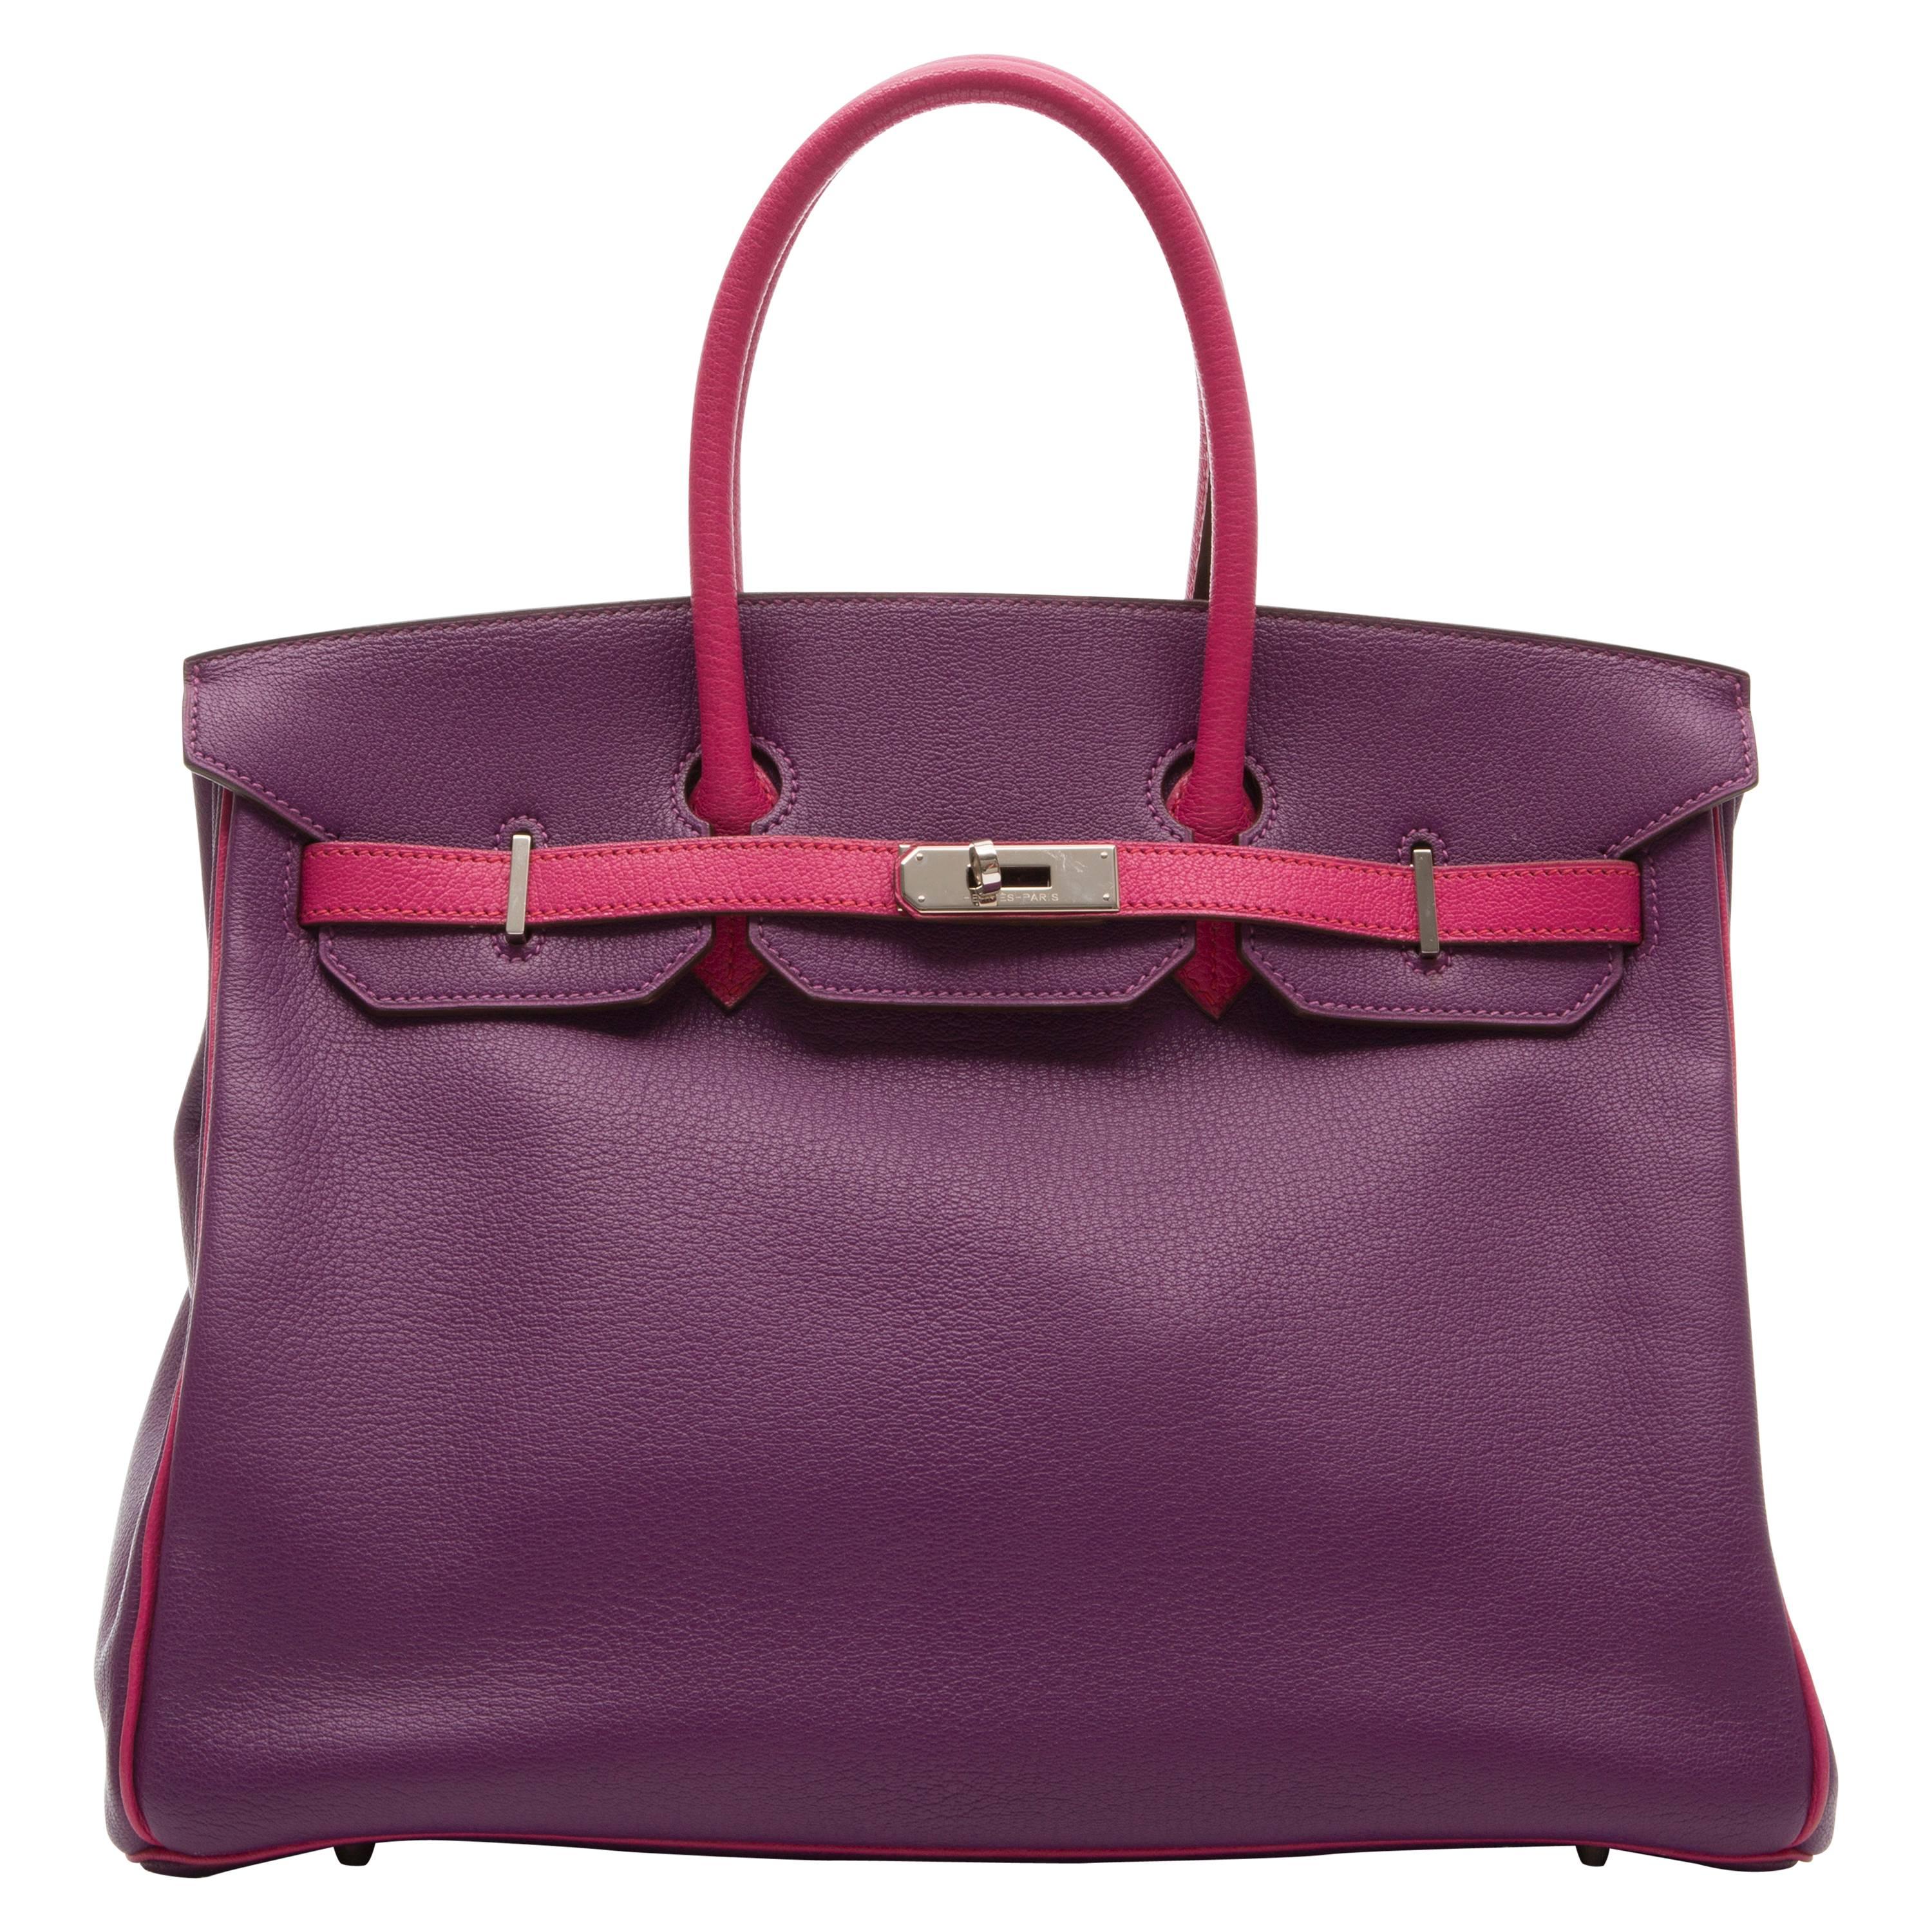 Hermes Special Order Bi-colour Togo Leather 35cm Birkin Bag